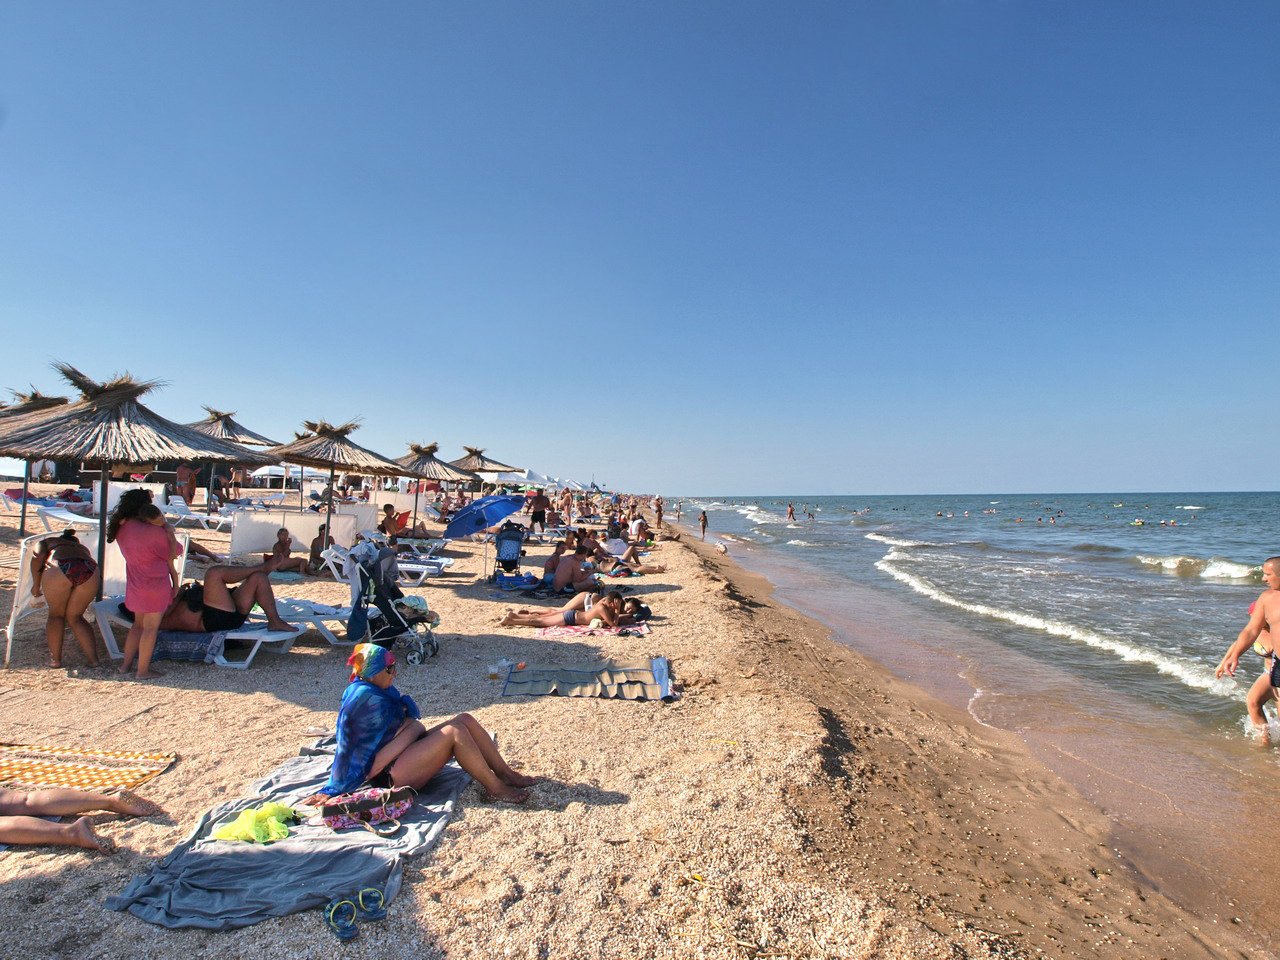 Геническ по цене Батуми: будут ли морские курорты в Украине дороже зарубежных